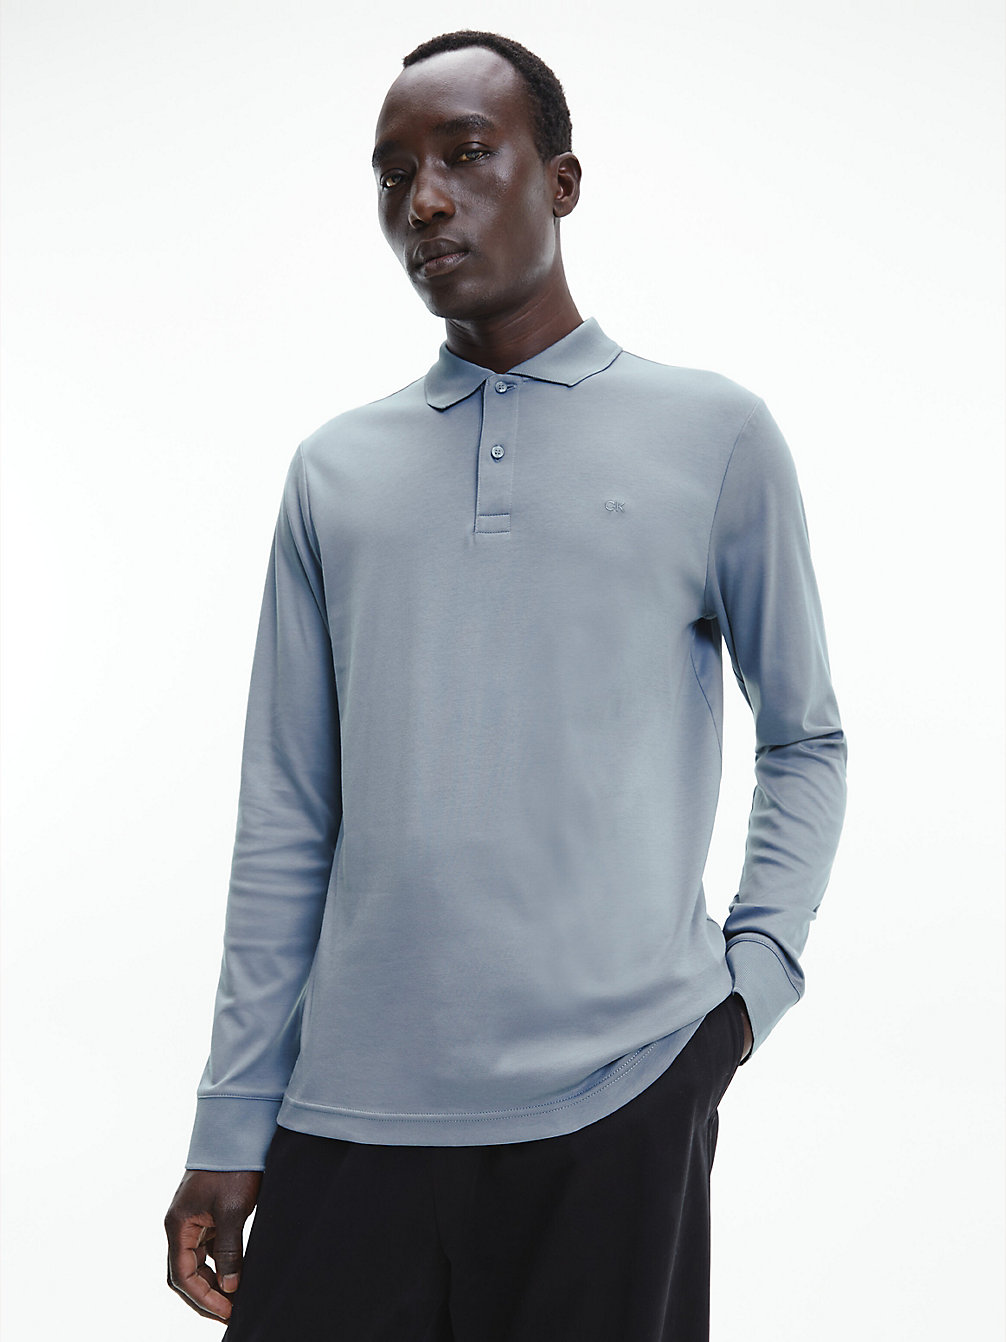 GREY TAR > Wąska Koszulka Polo Z Długim Rękawem > undefined Mężczyźni - Calvin Klein